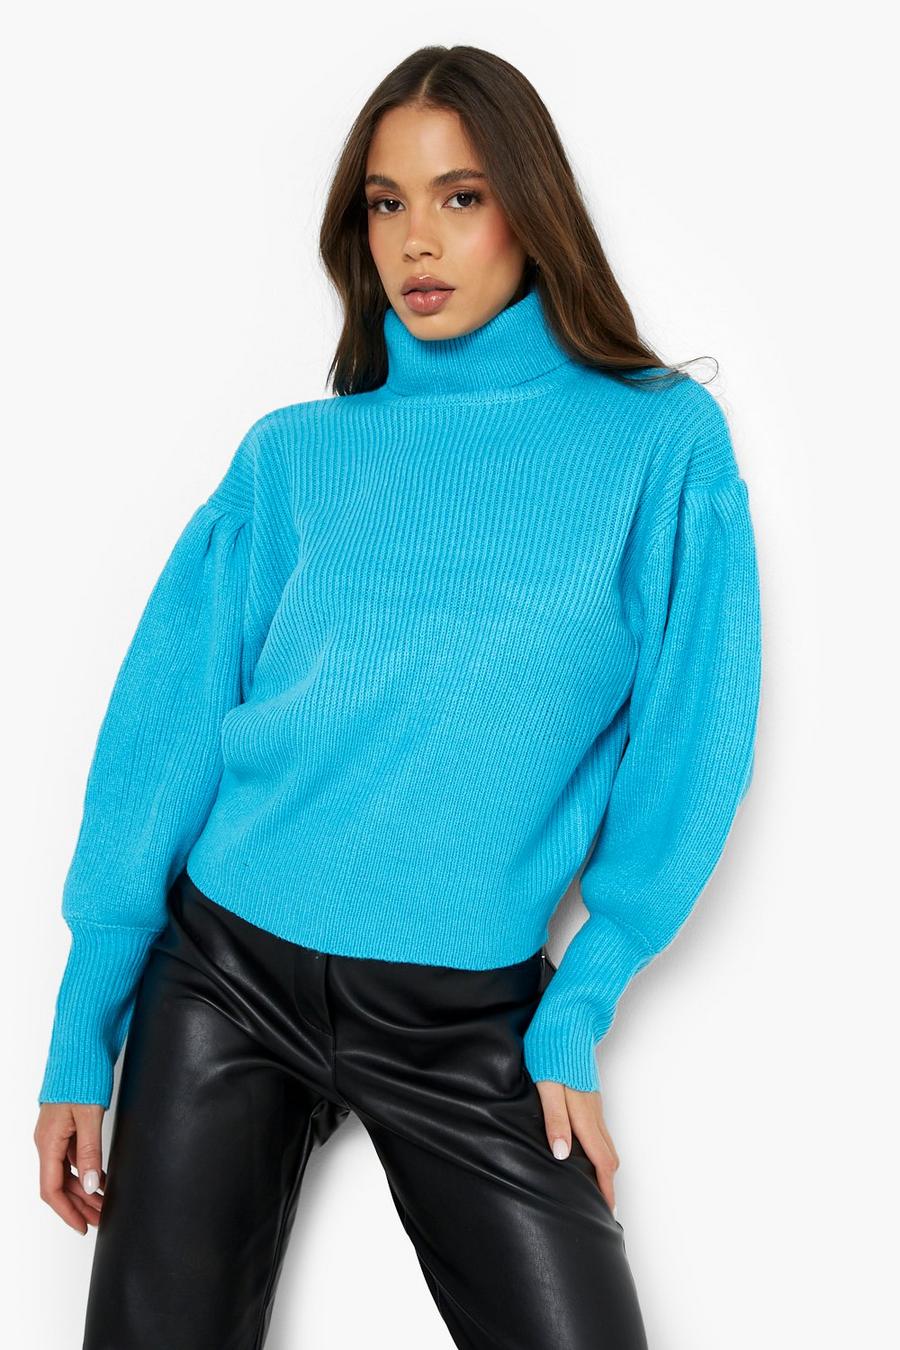 Turquoise blue Balloon Sleeve Turtleneck Sweater